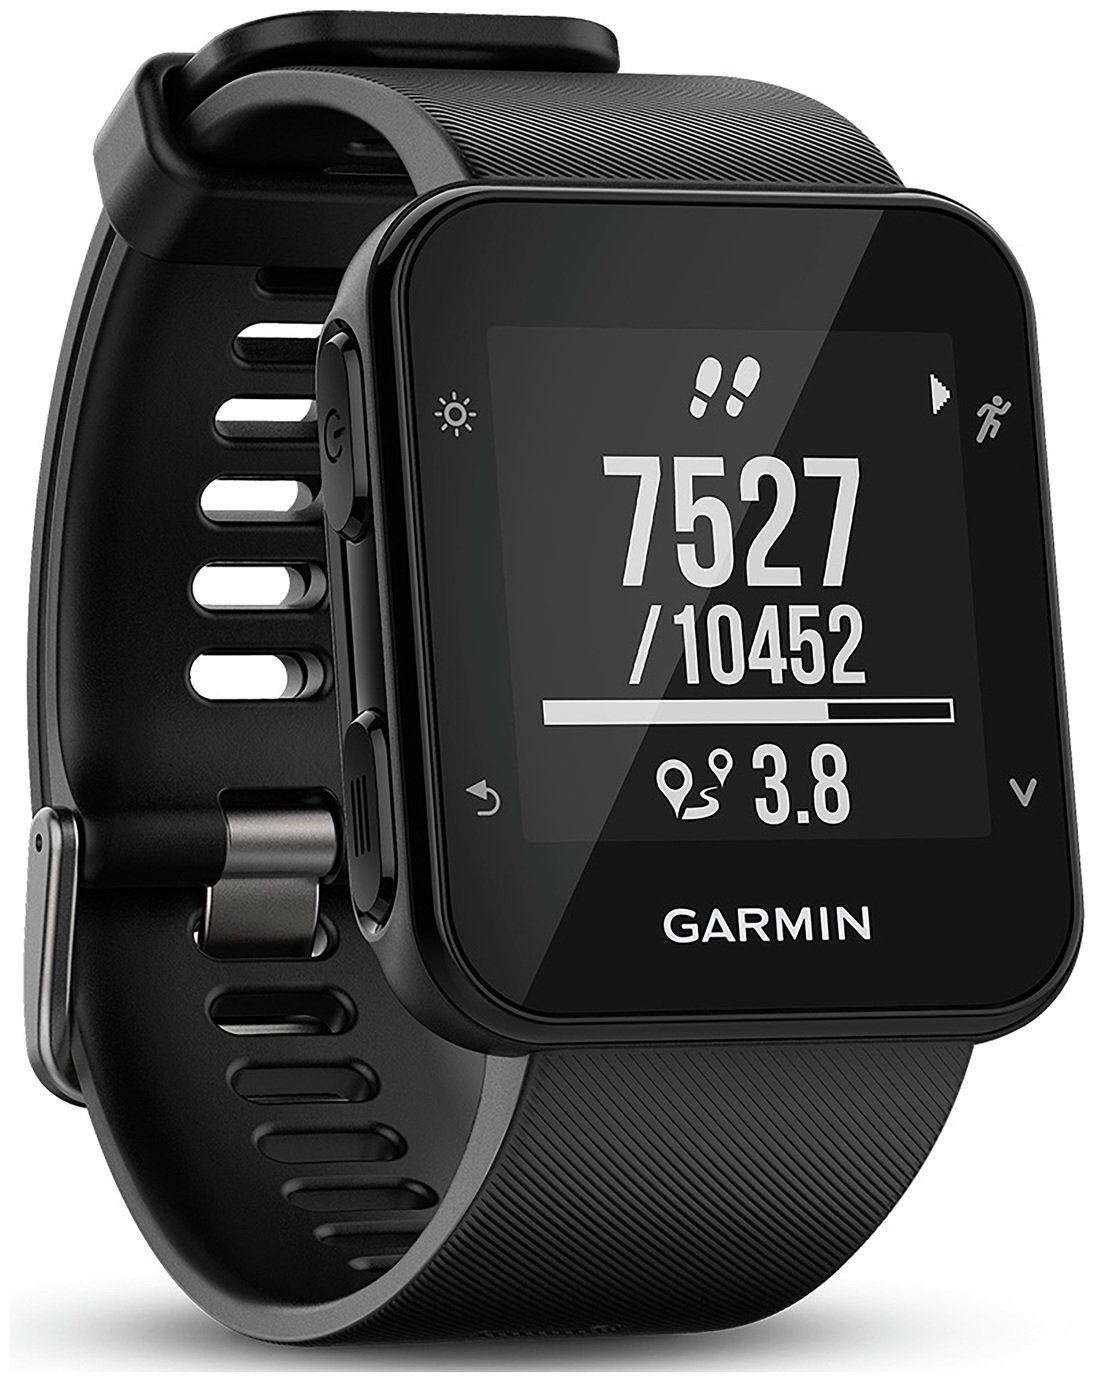 Garmin Forerunner 35 Running Heart Rate Watch - Black